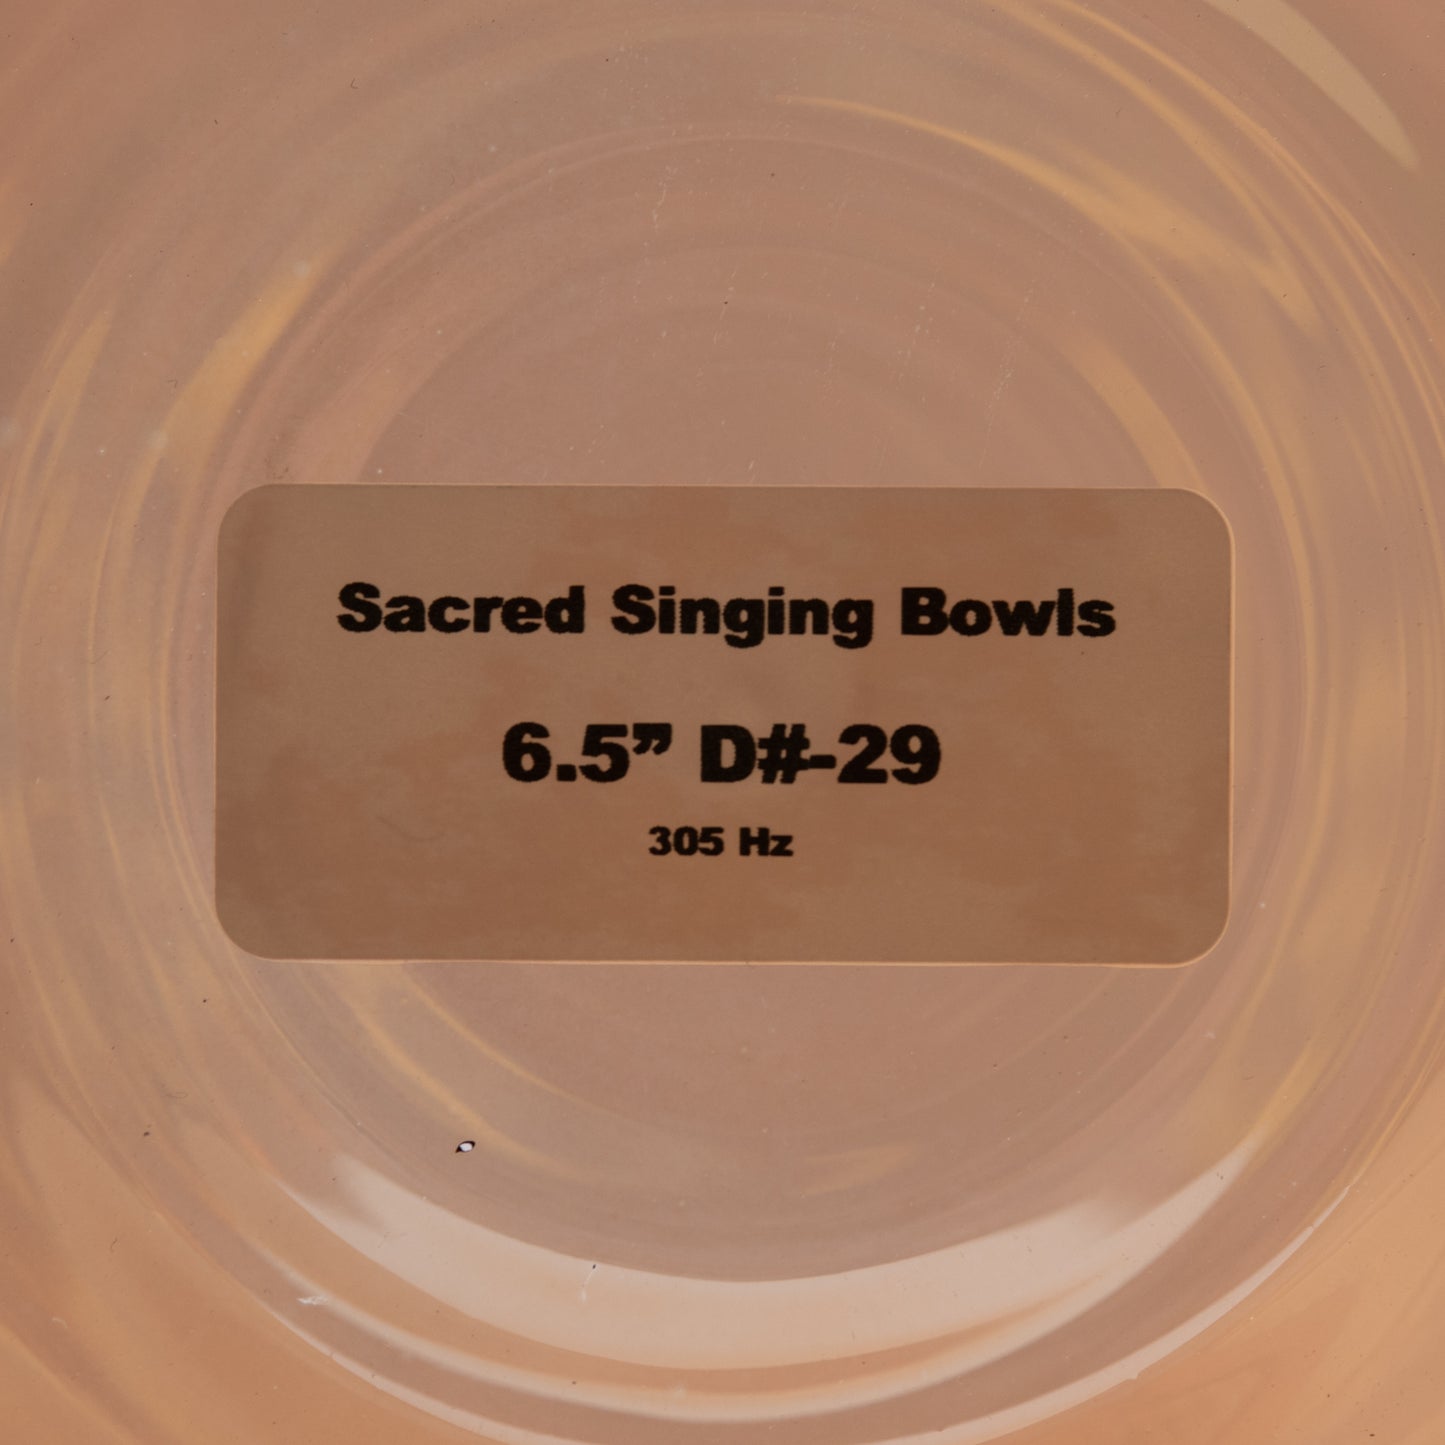 6.5" D#-29 Orange Topaz Color Crystal Singing Bowl, Sacred Singing Bowls